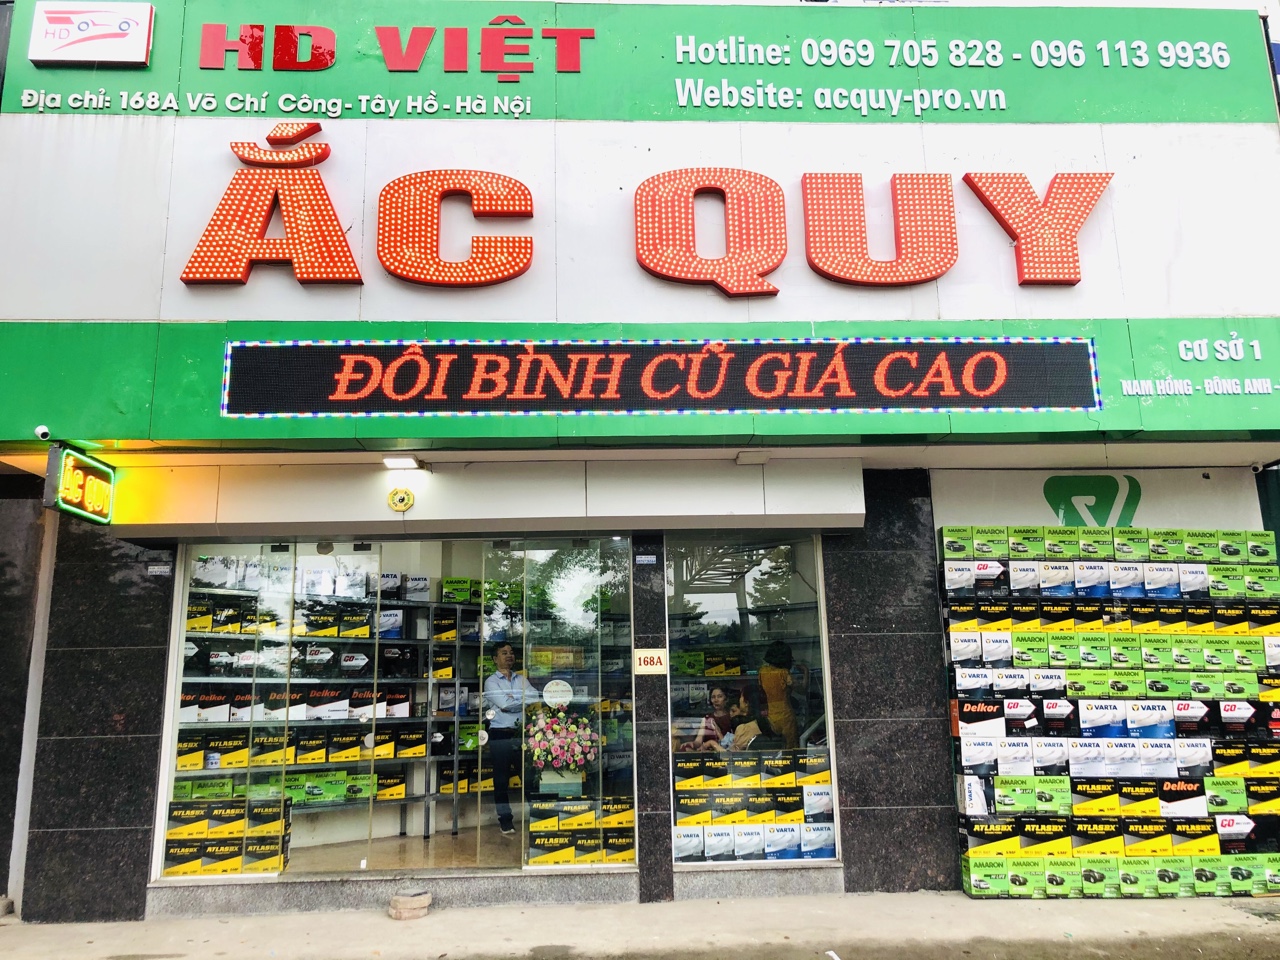 HD Việt - Đại lý ắc quy ô tô Hà Nội